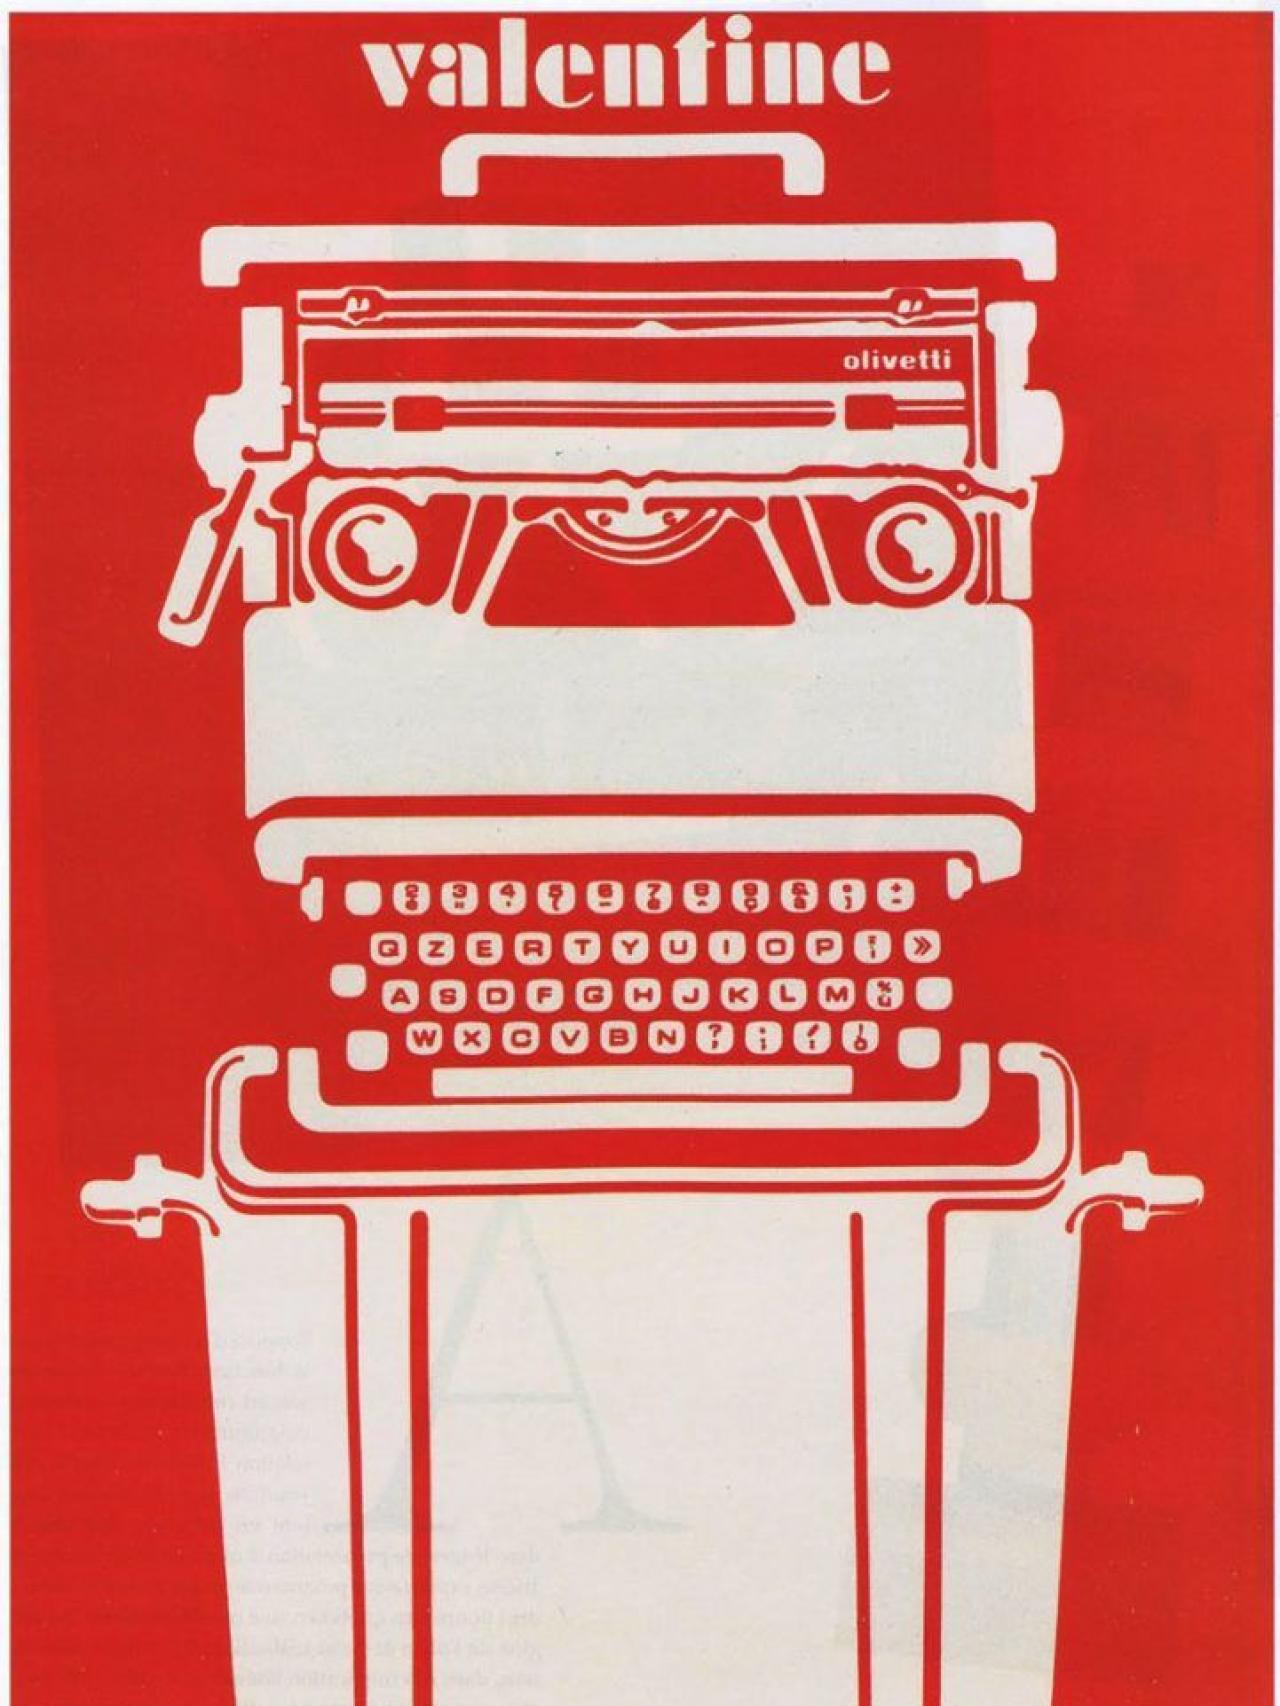 La máquina de escribir, de invento revolucionario a reliquia romántica